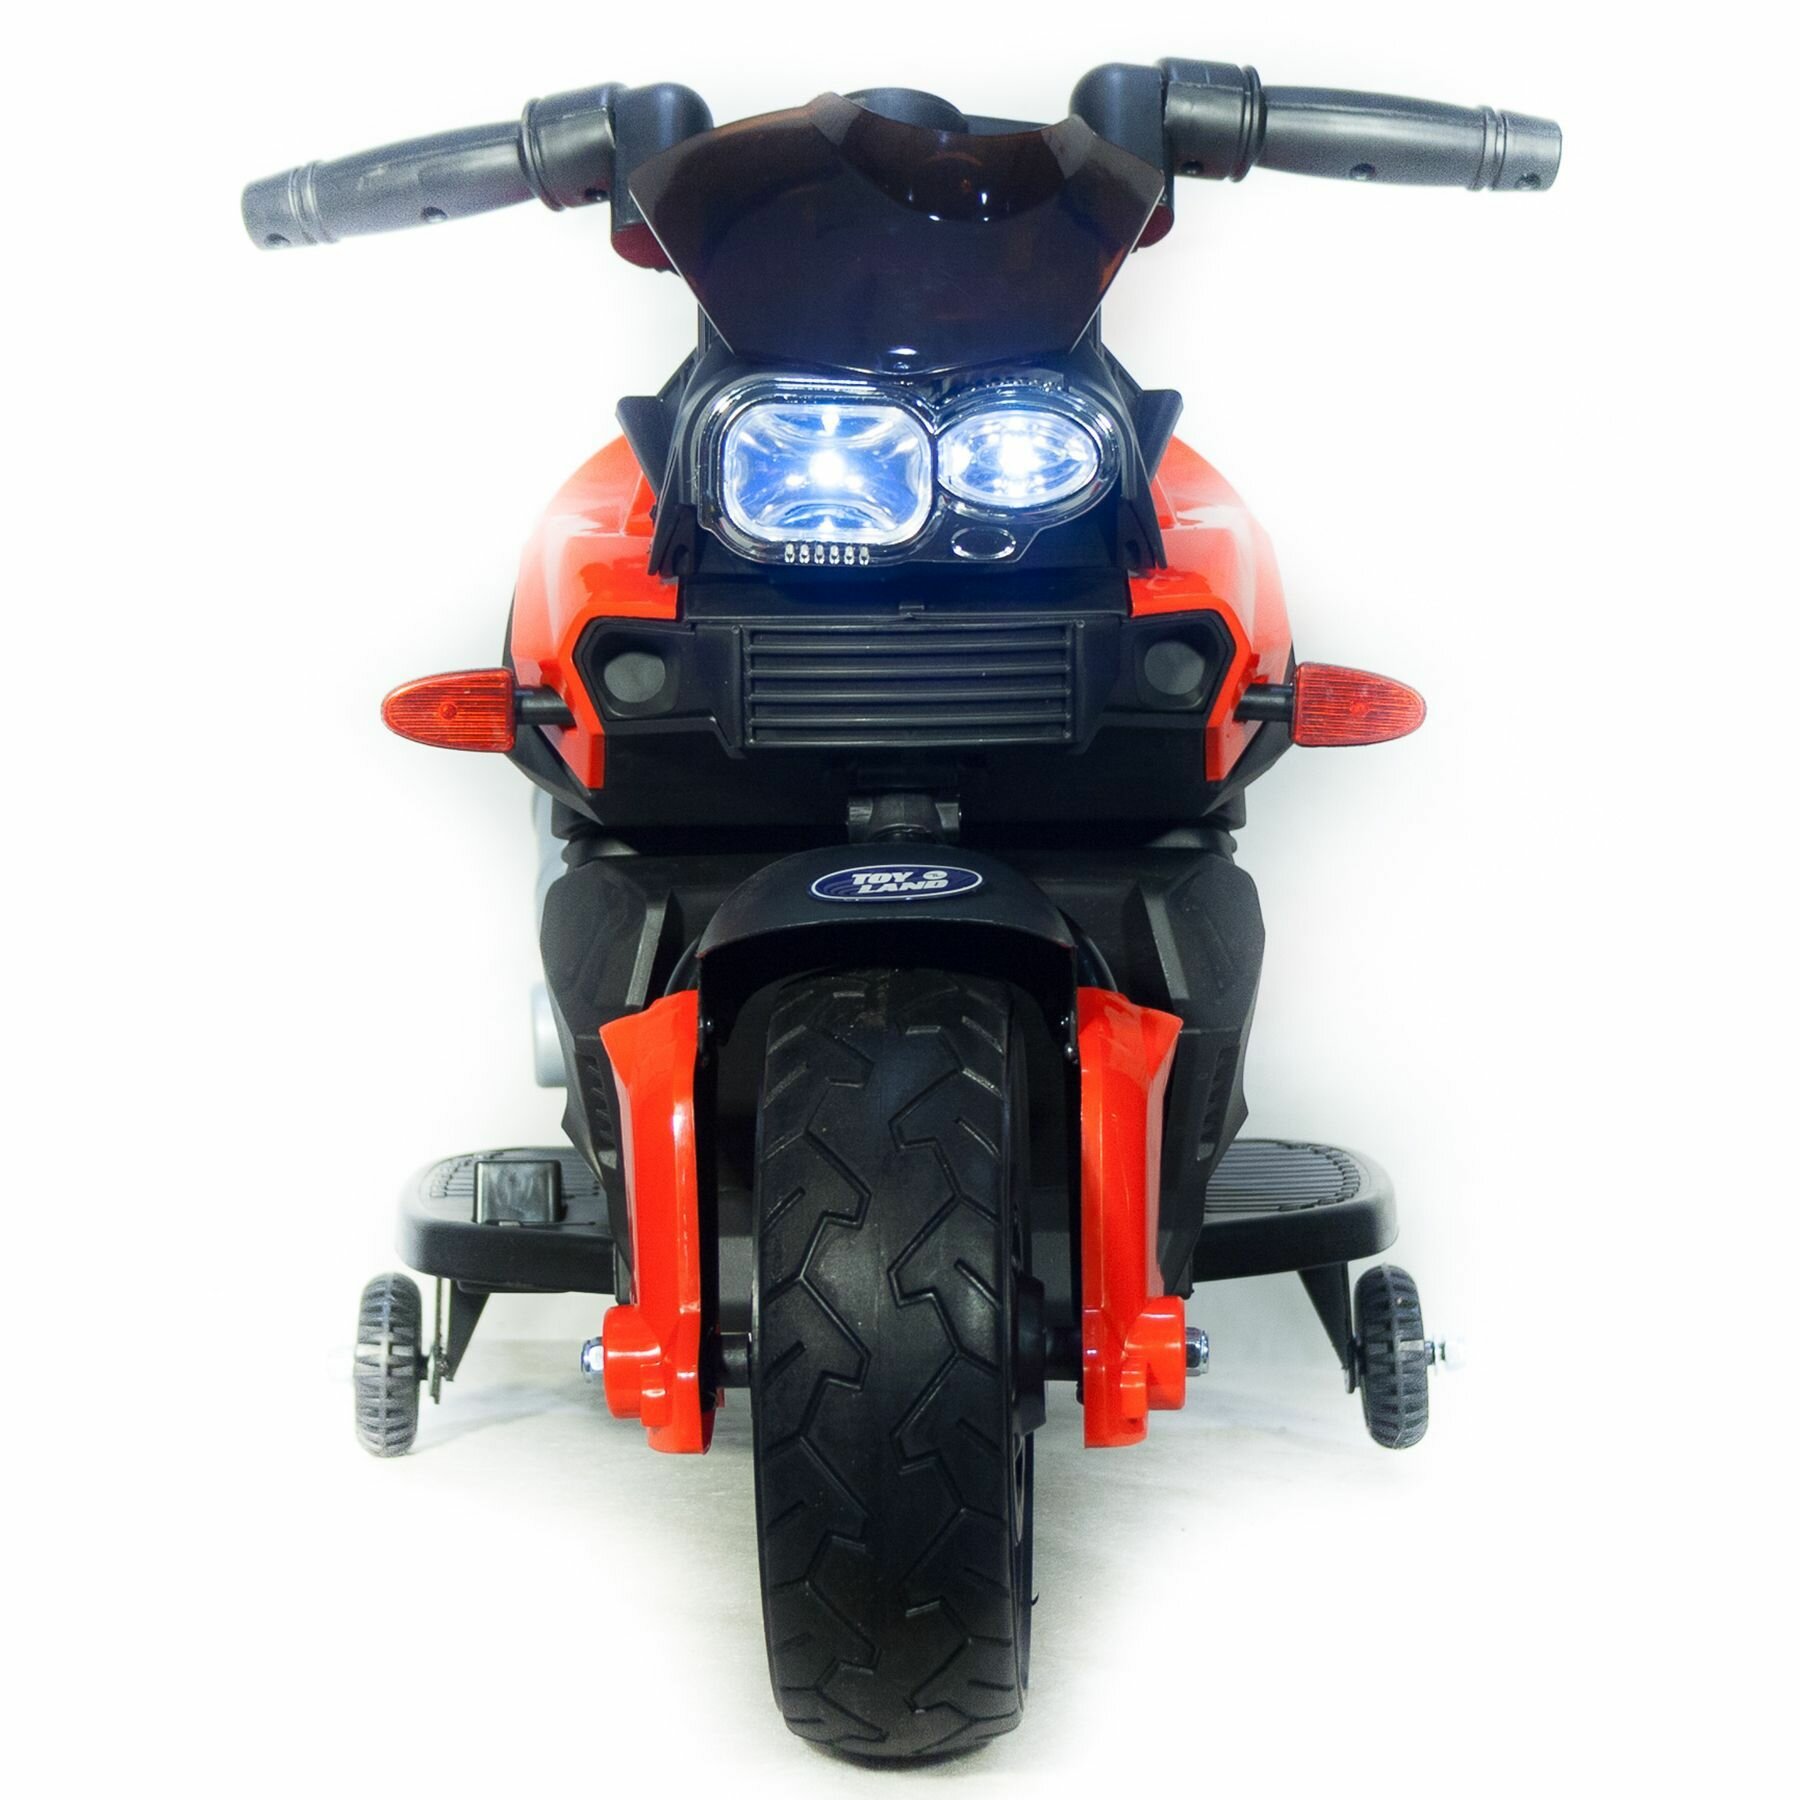 Мотоцикл Minimoto JC918